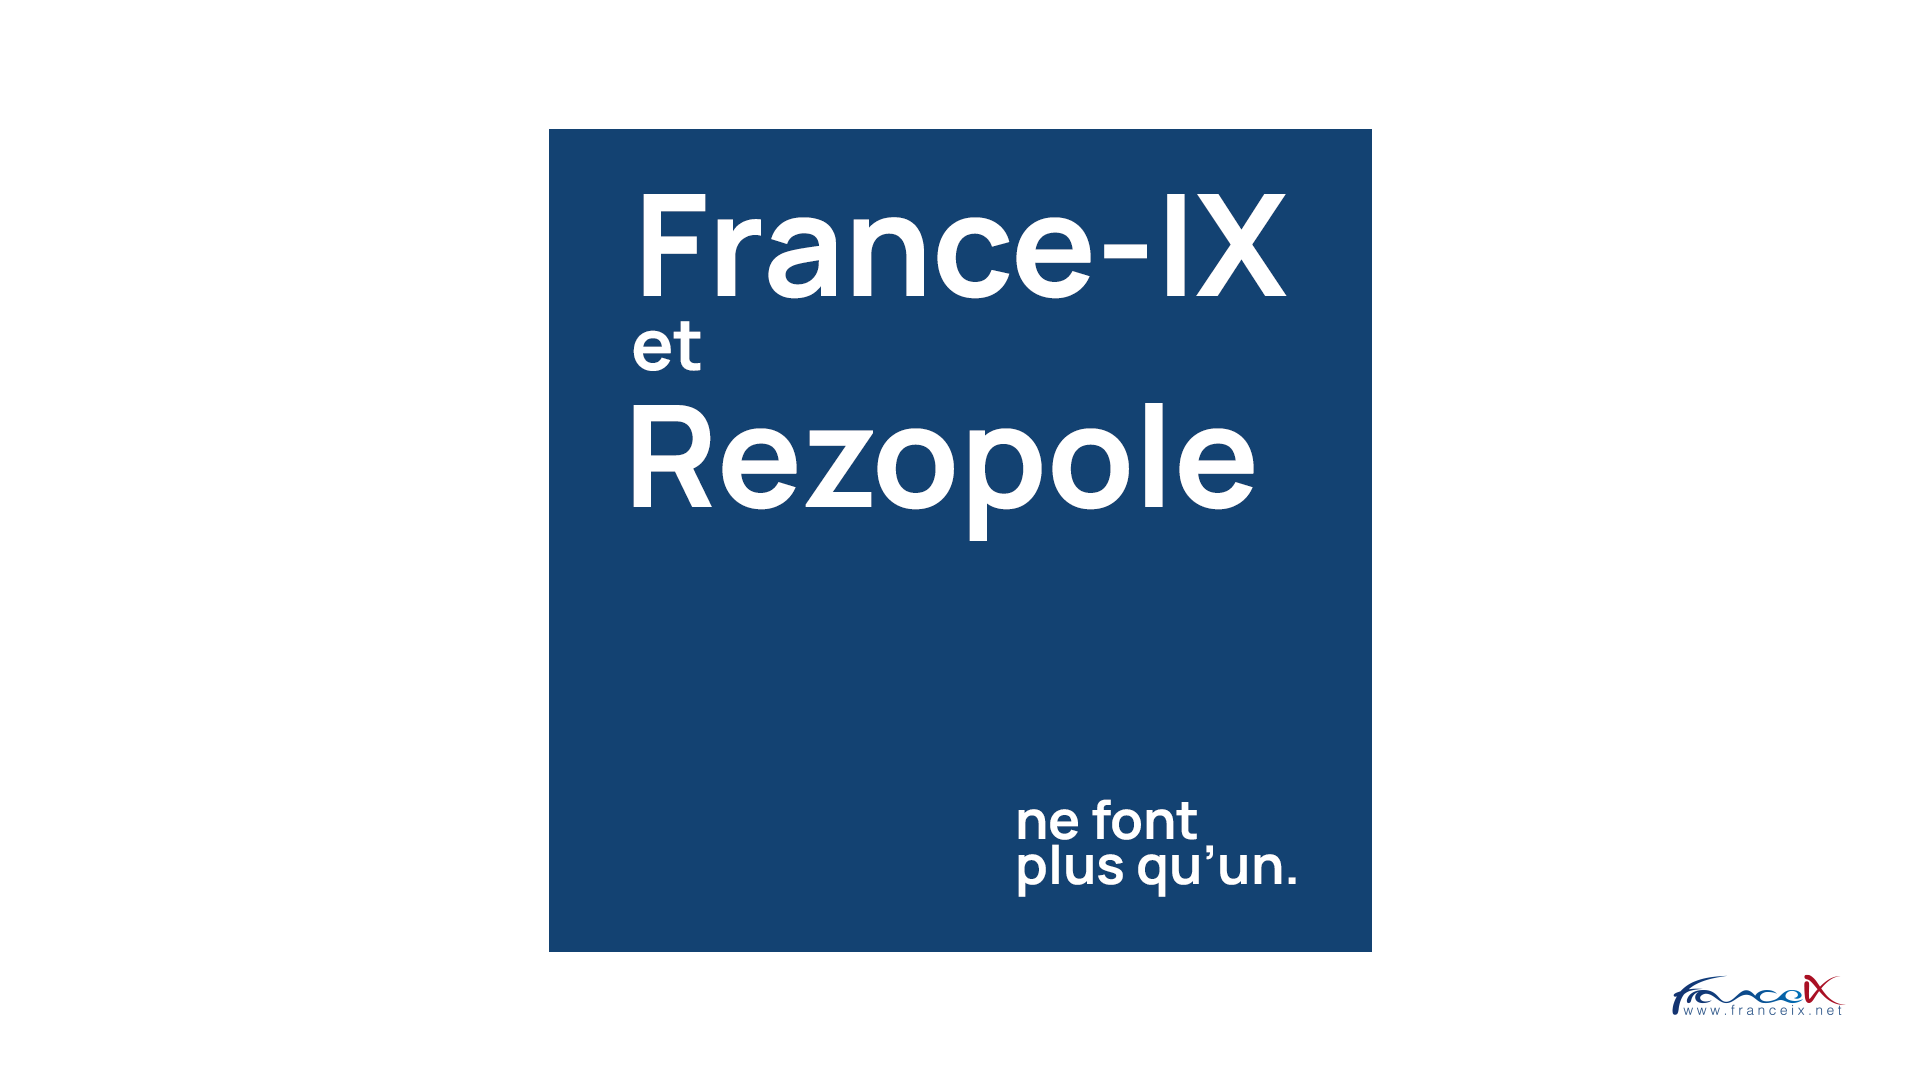 France-IX fusionne avec Rezopole